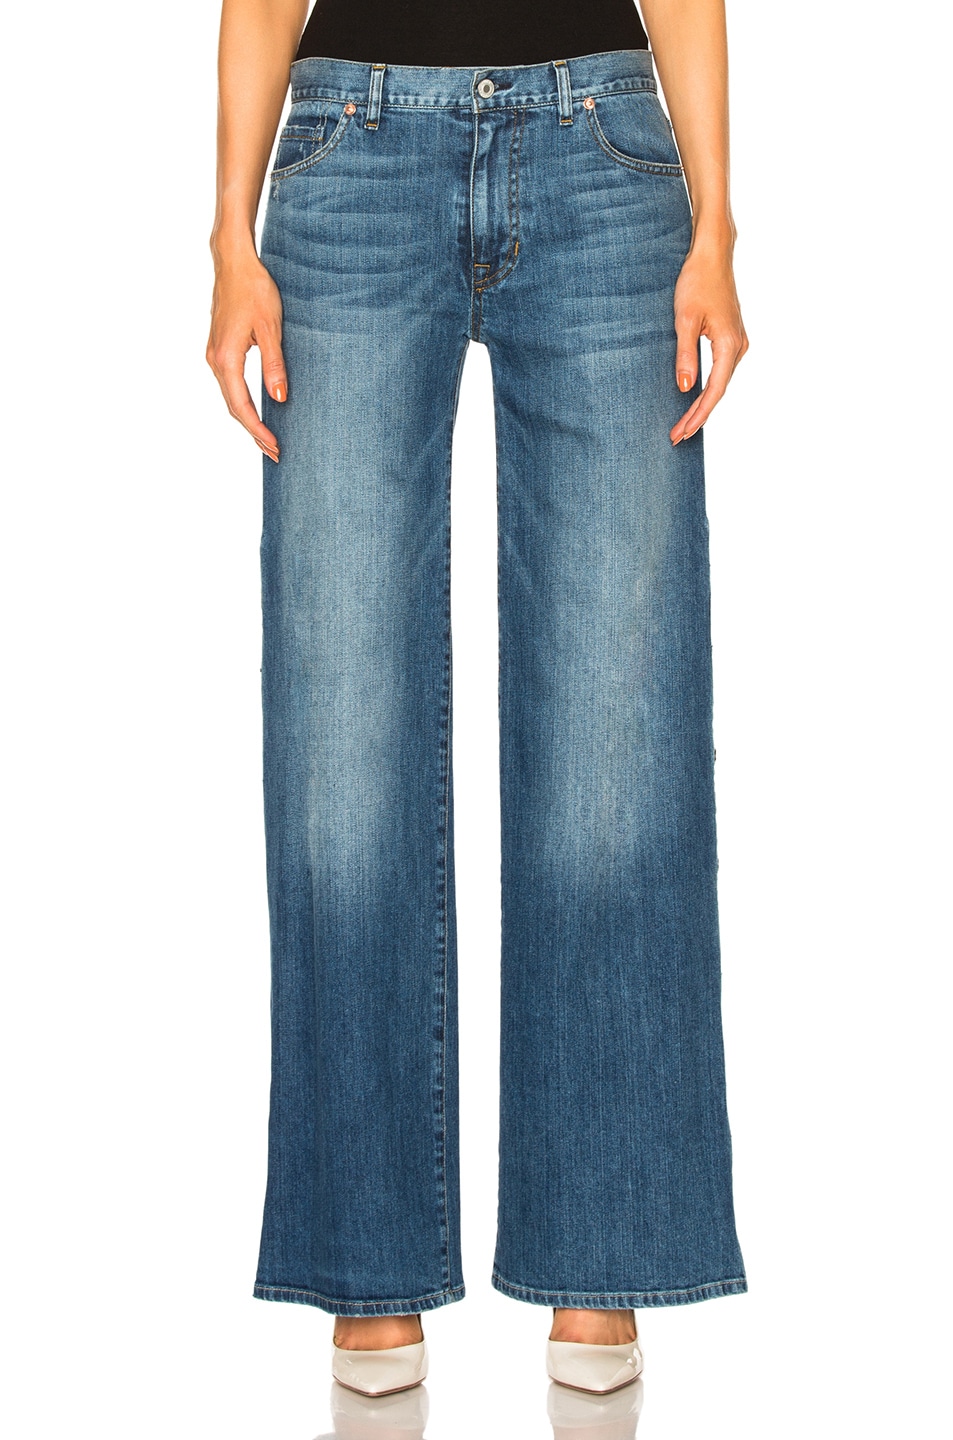 NILI LOTAN Ena Wide Leg Jeans in Duane Wash | ModeSens